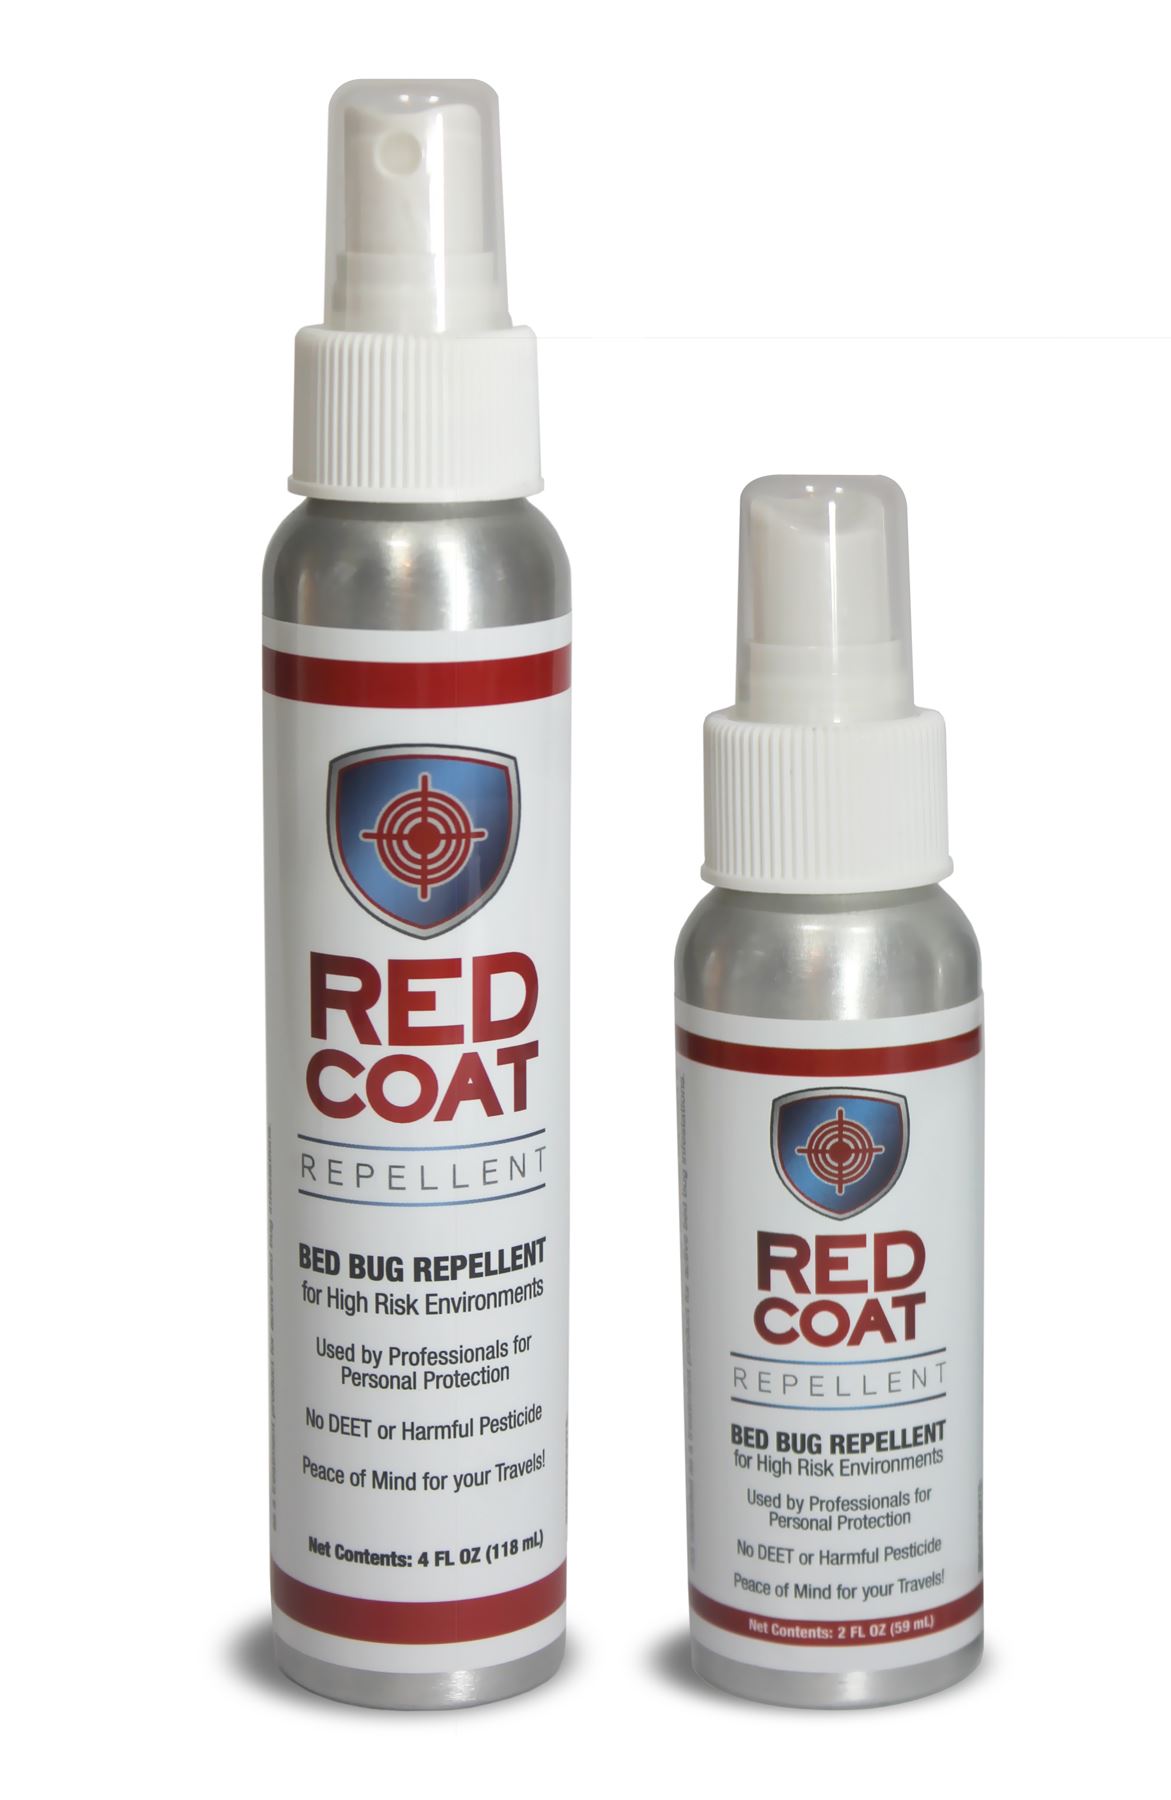 Red Coat DEET-free Bed Bug Repellent spritz bottles